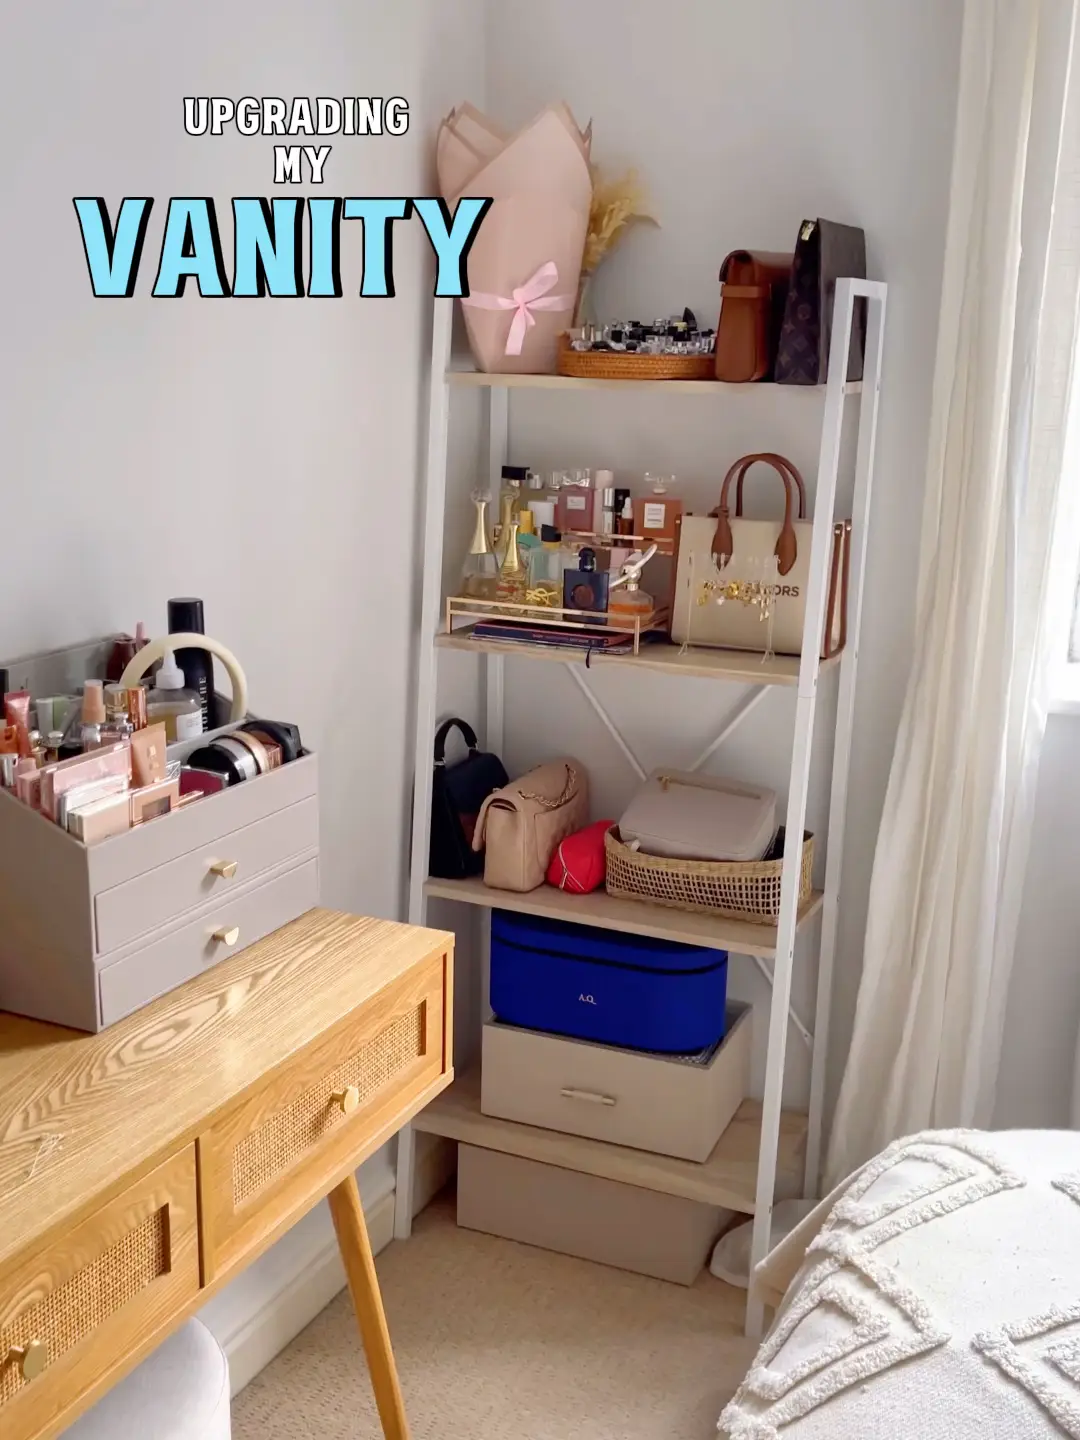 My Vanity Area, LuxMommy